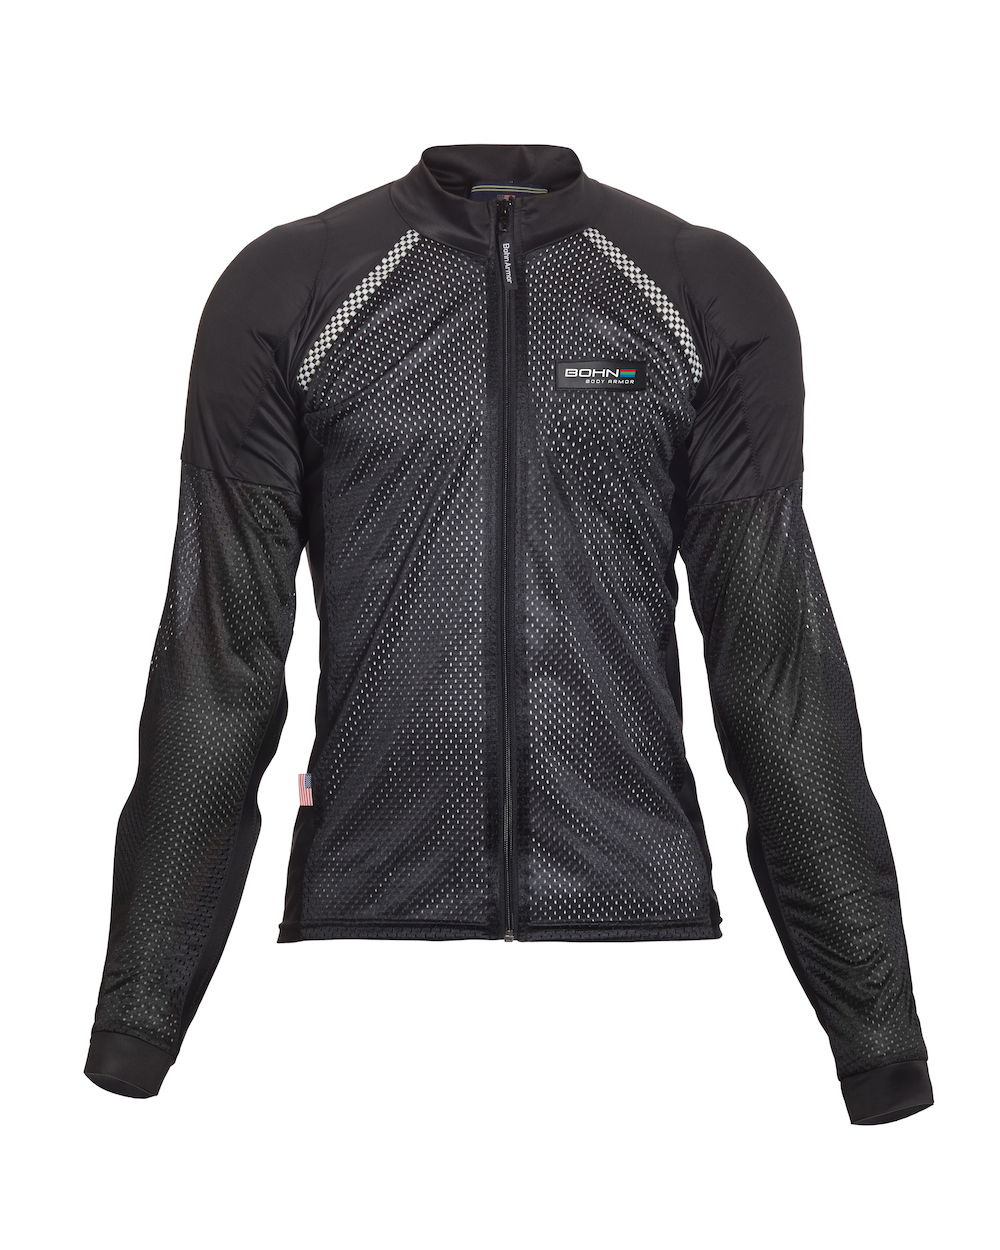 Bowtex - Aramide shirt technical underlayer - Biker Outfit